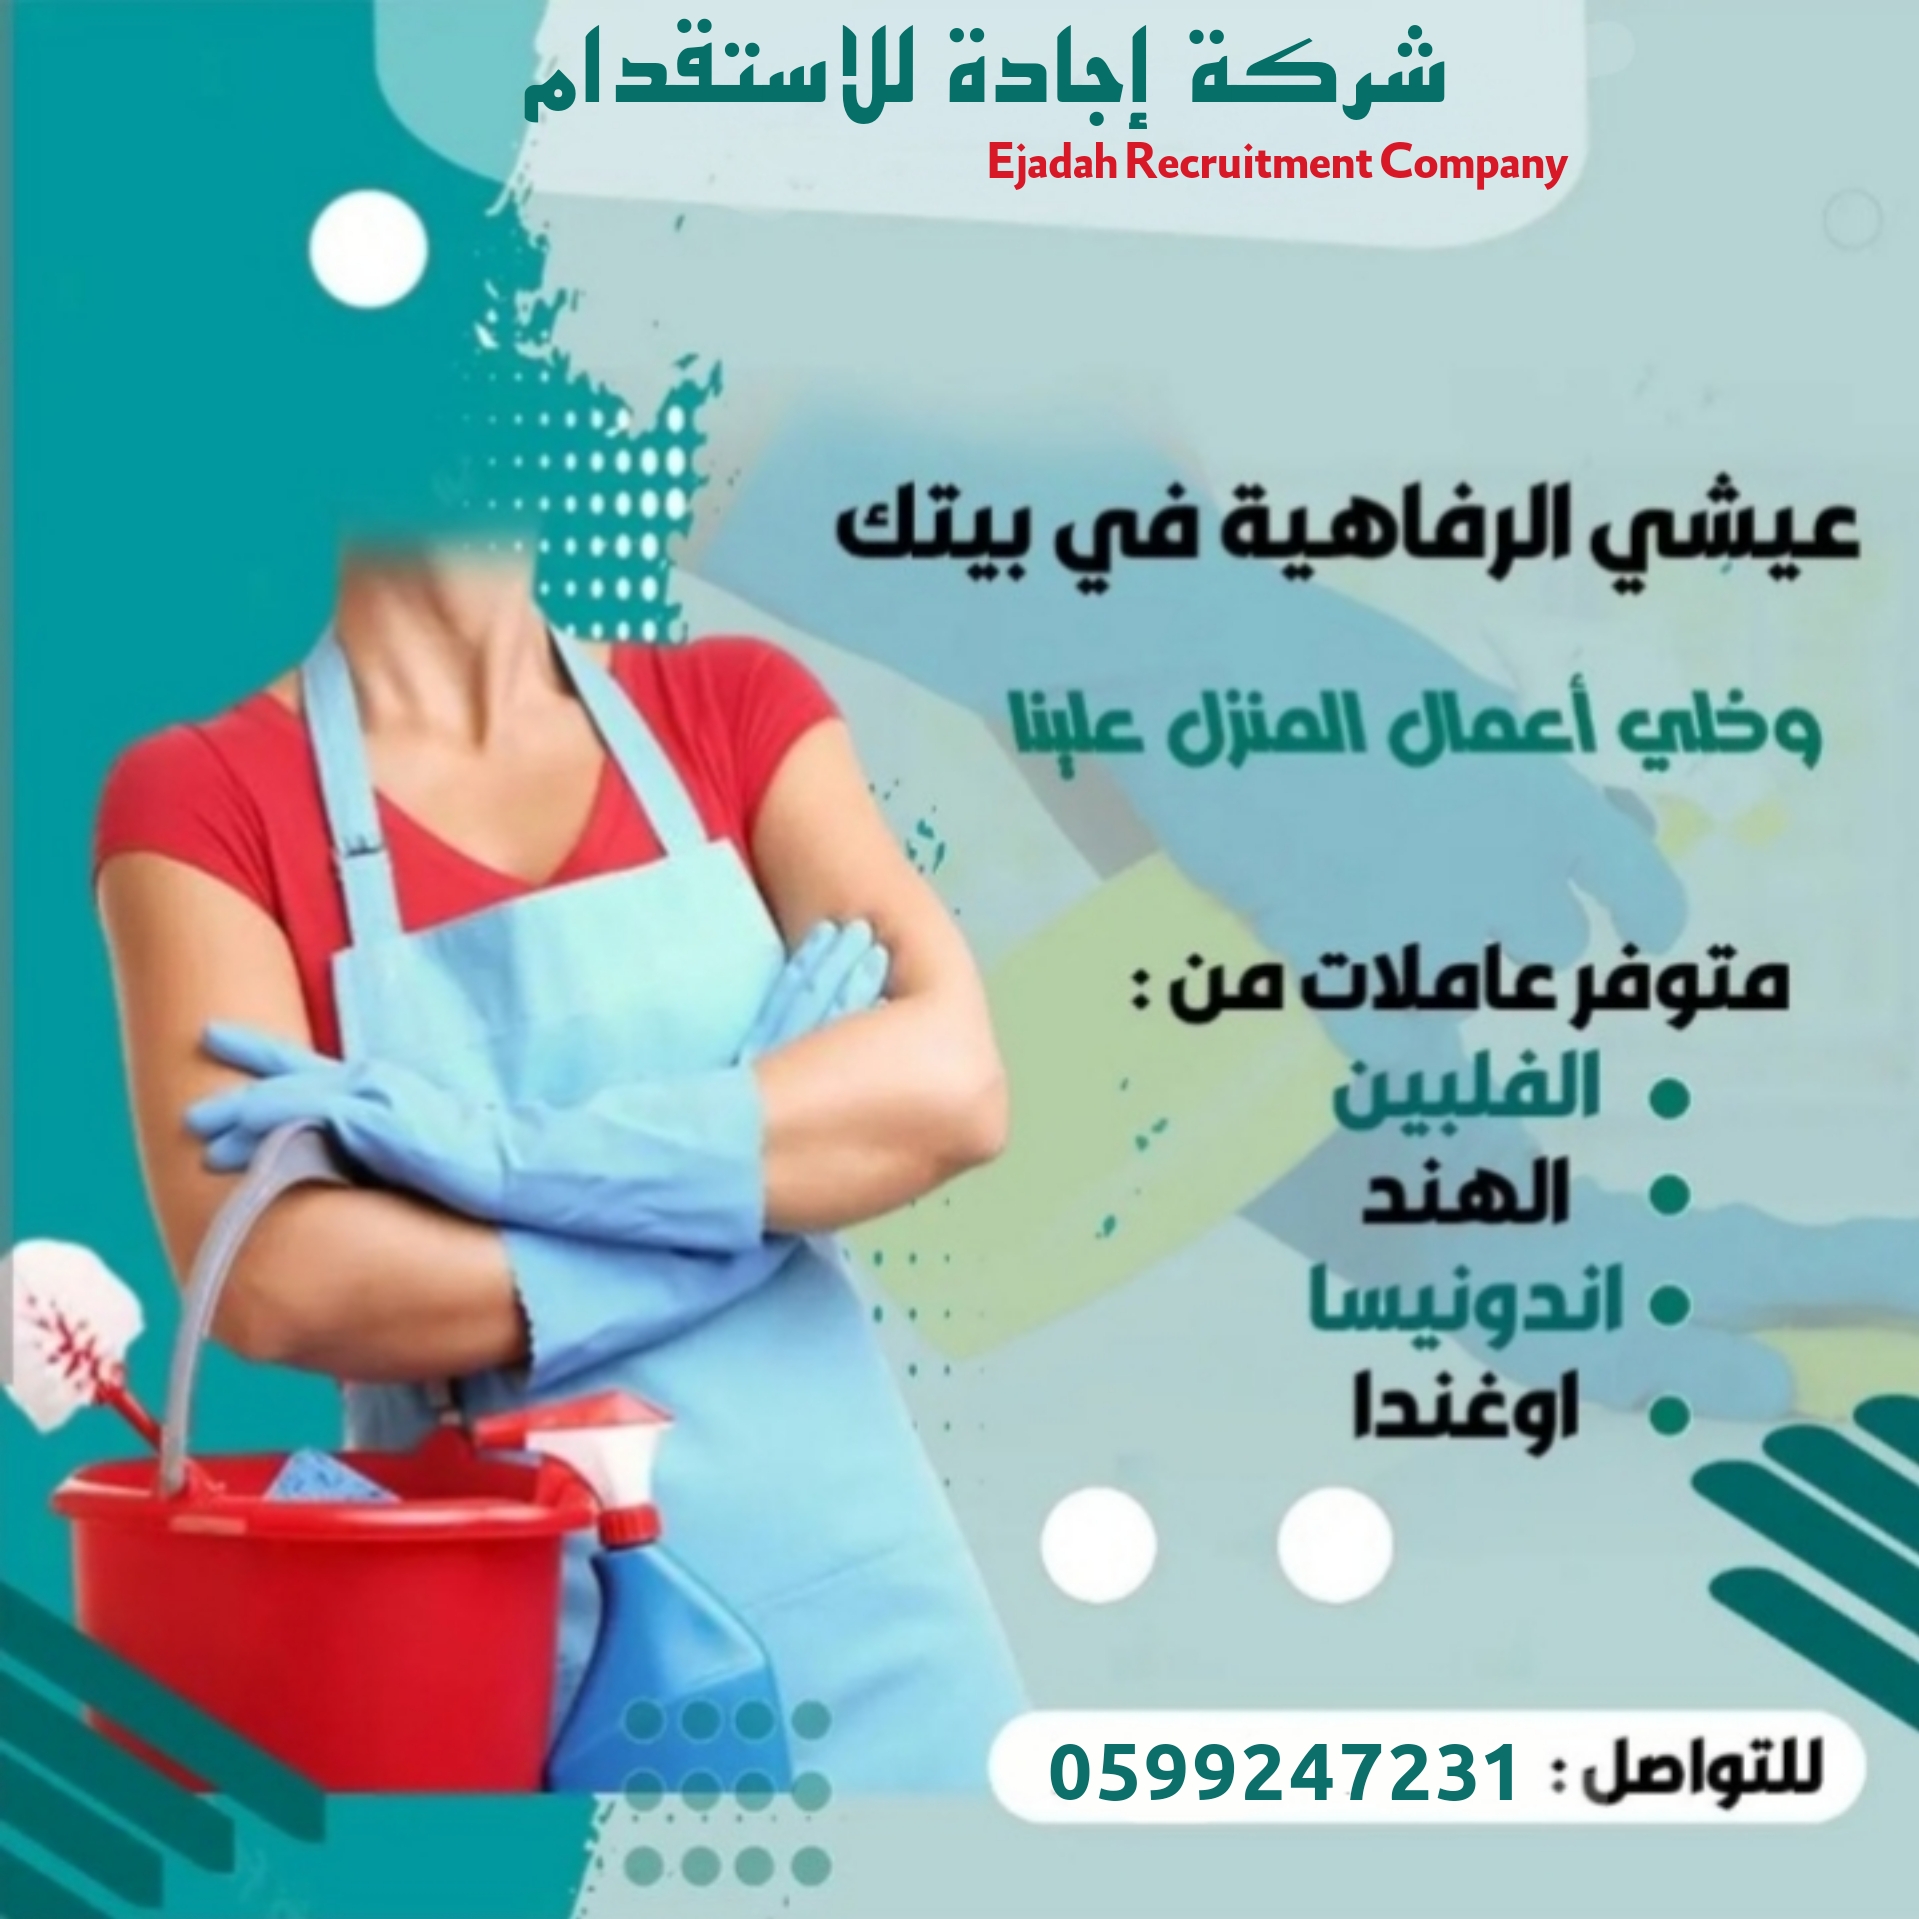 خادمات منزلية ذوات خبرة من جنسيات مختلفة بلاظافة لمربيات اطفال من الجنسية العربية 